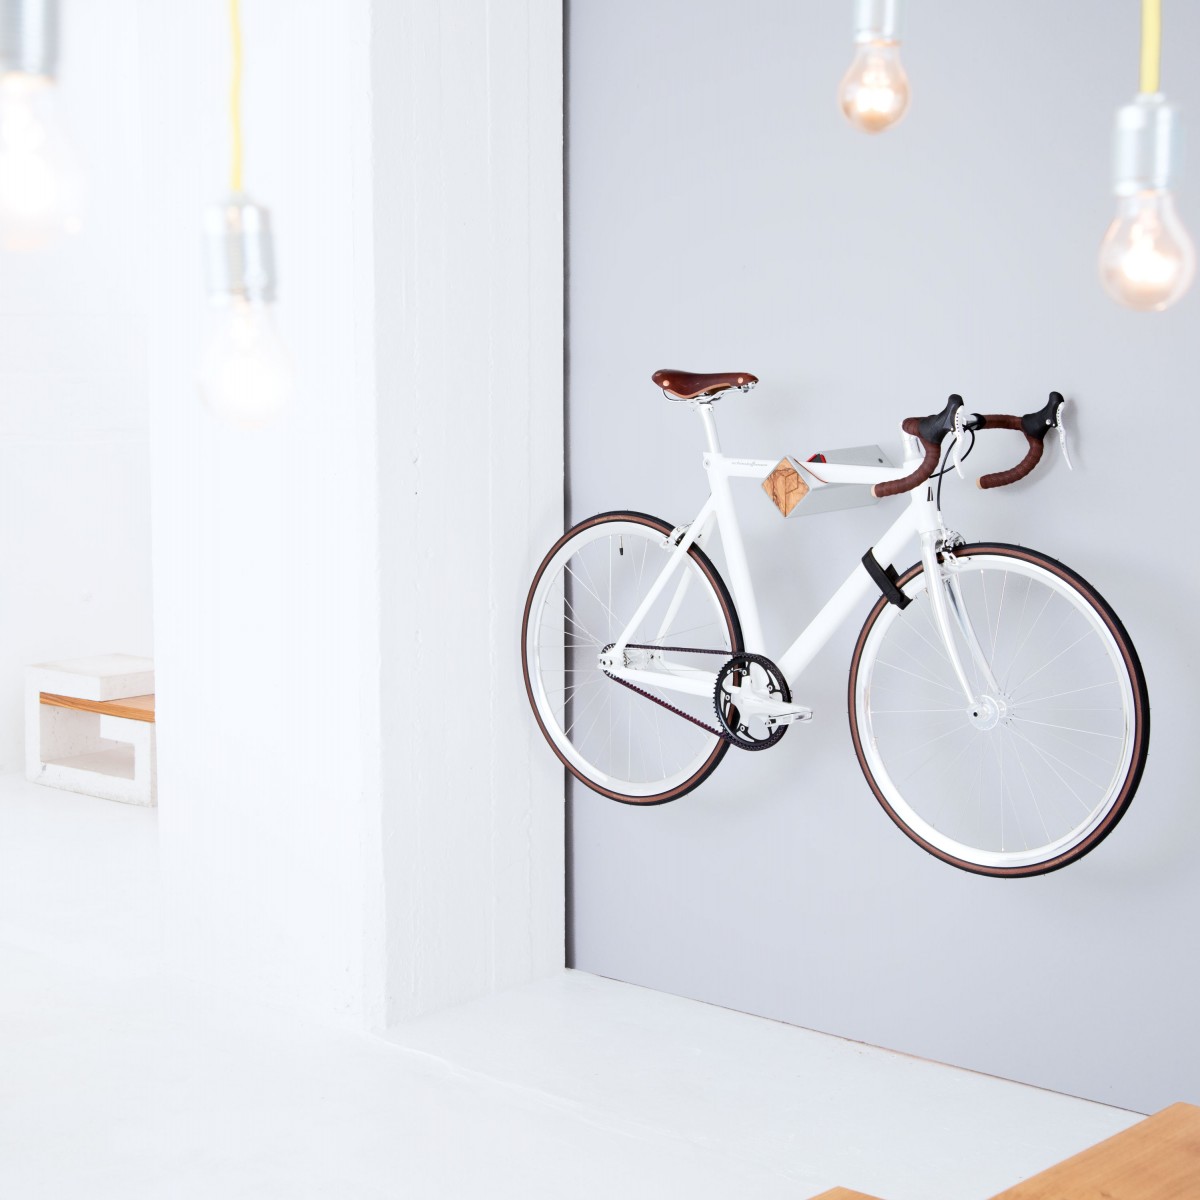 Stilvolle Design Fahrrad Wandhalterung | PARAX® D-RACK | für Rennrad, Hardtail, Cityrad & Tourenrad | Silber - Rot mit Oliven Holz